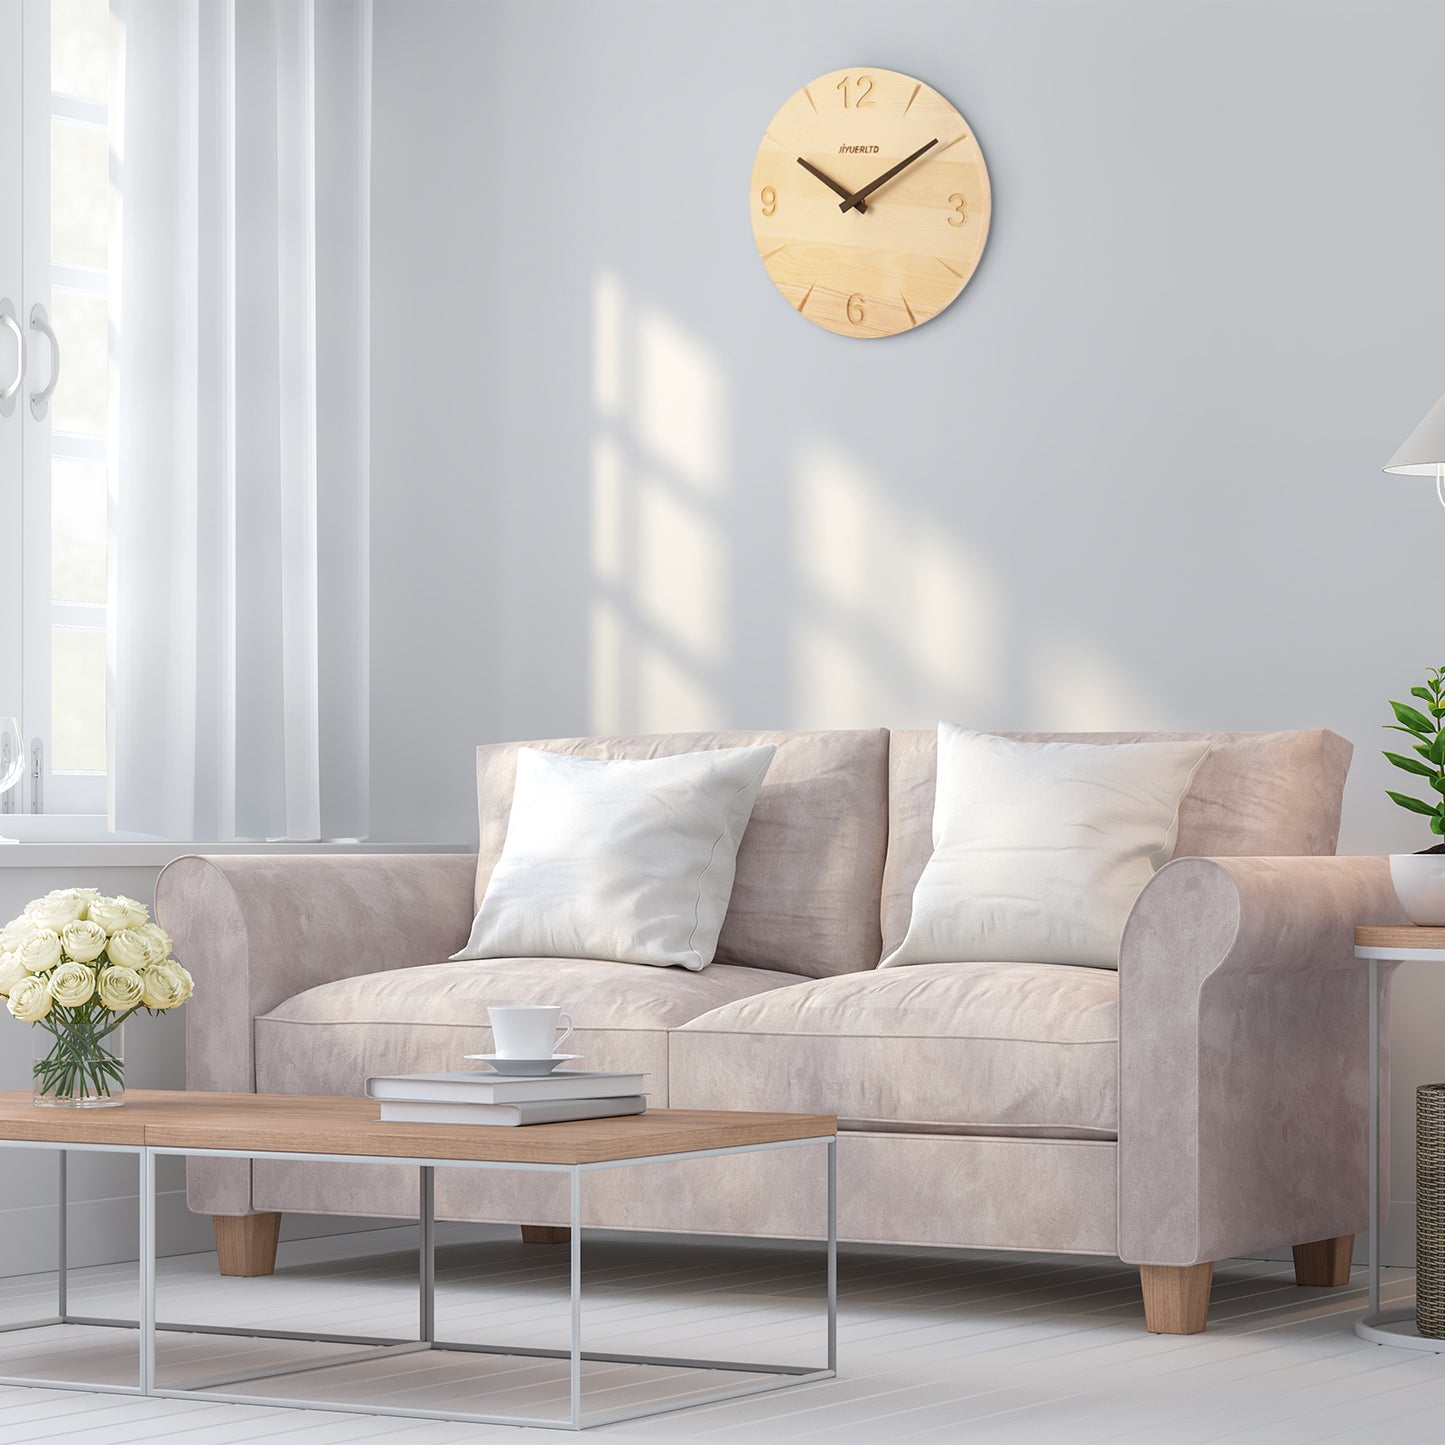 JIYUERLTD Moderne Massivholzuhr - 30,5 cm leise Wanduhr, dekorative Uhr für Schlafzimmer, Wohnzimmer, Küche, Büro und Hotel 